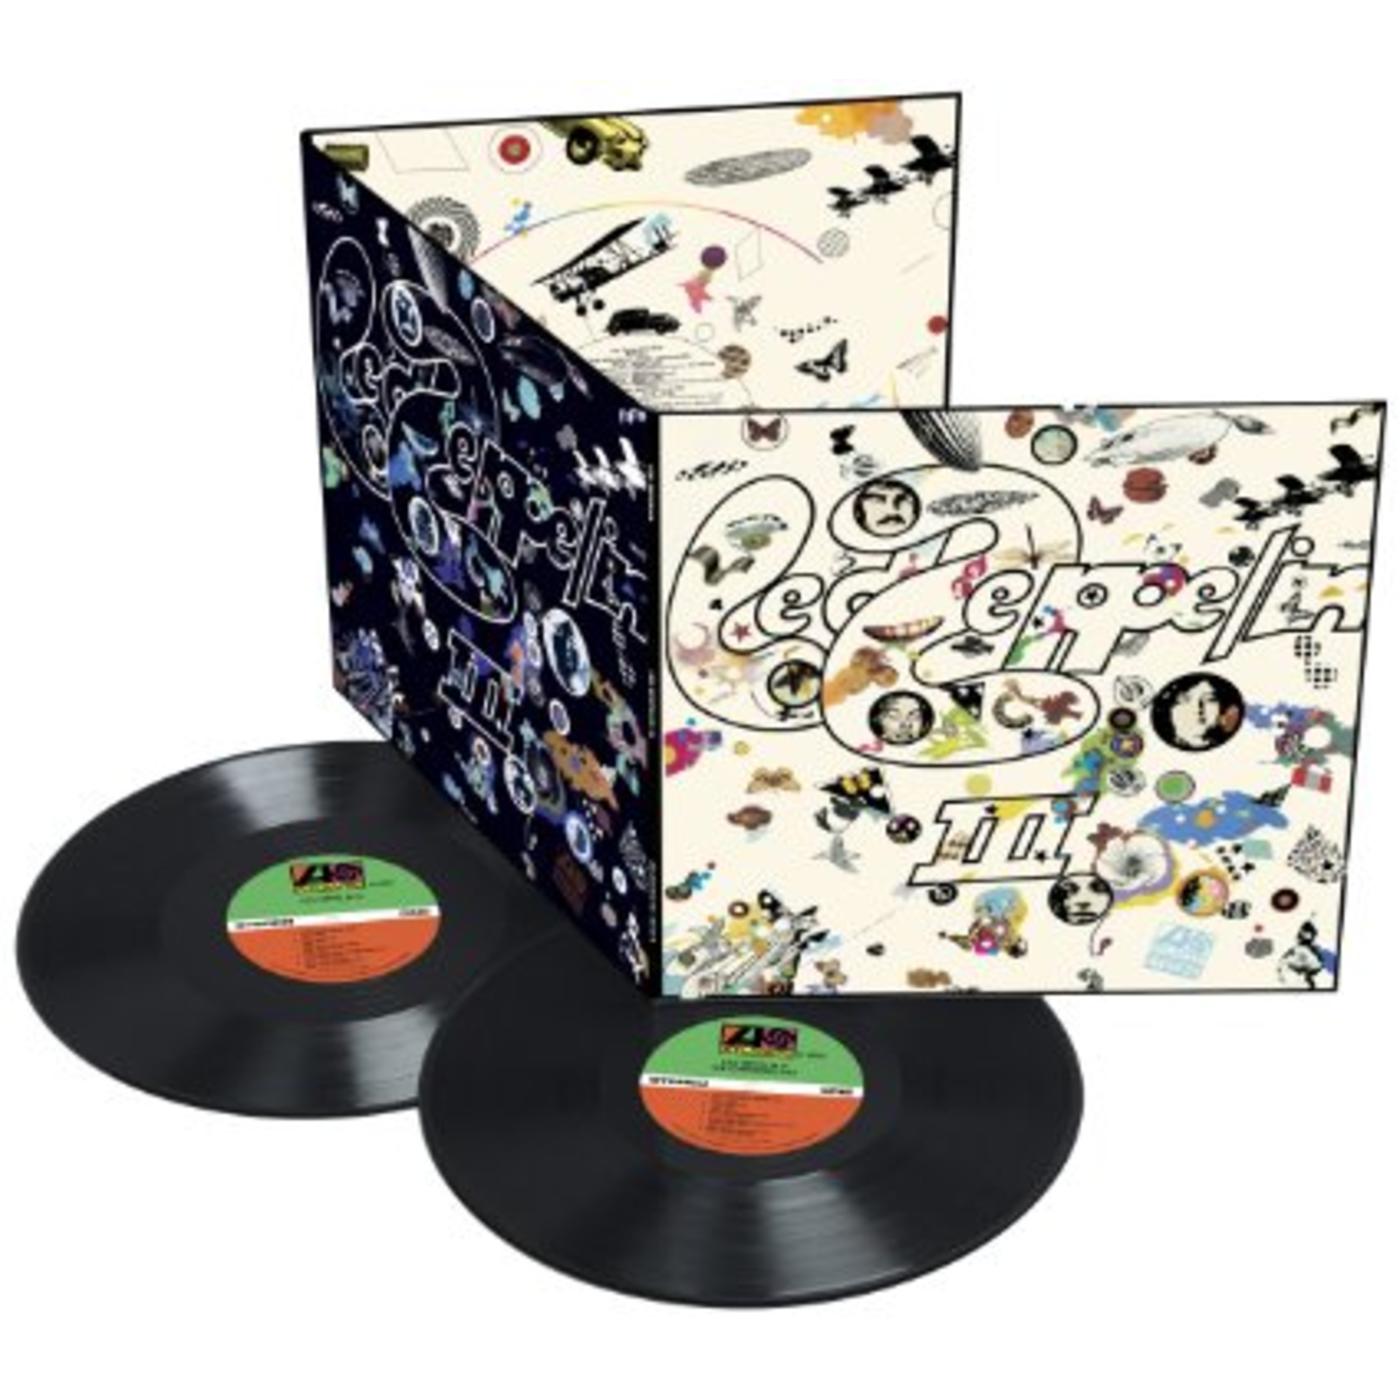 Led Zeppelin III - Deluxe Edition  Vinyl